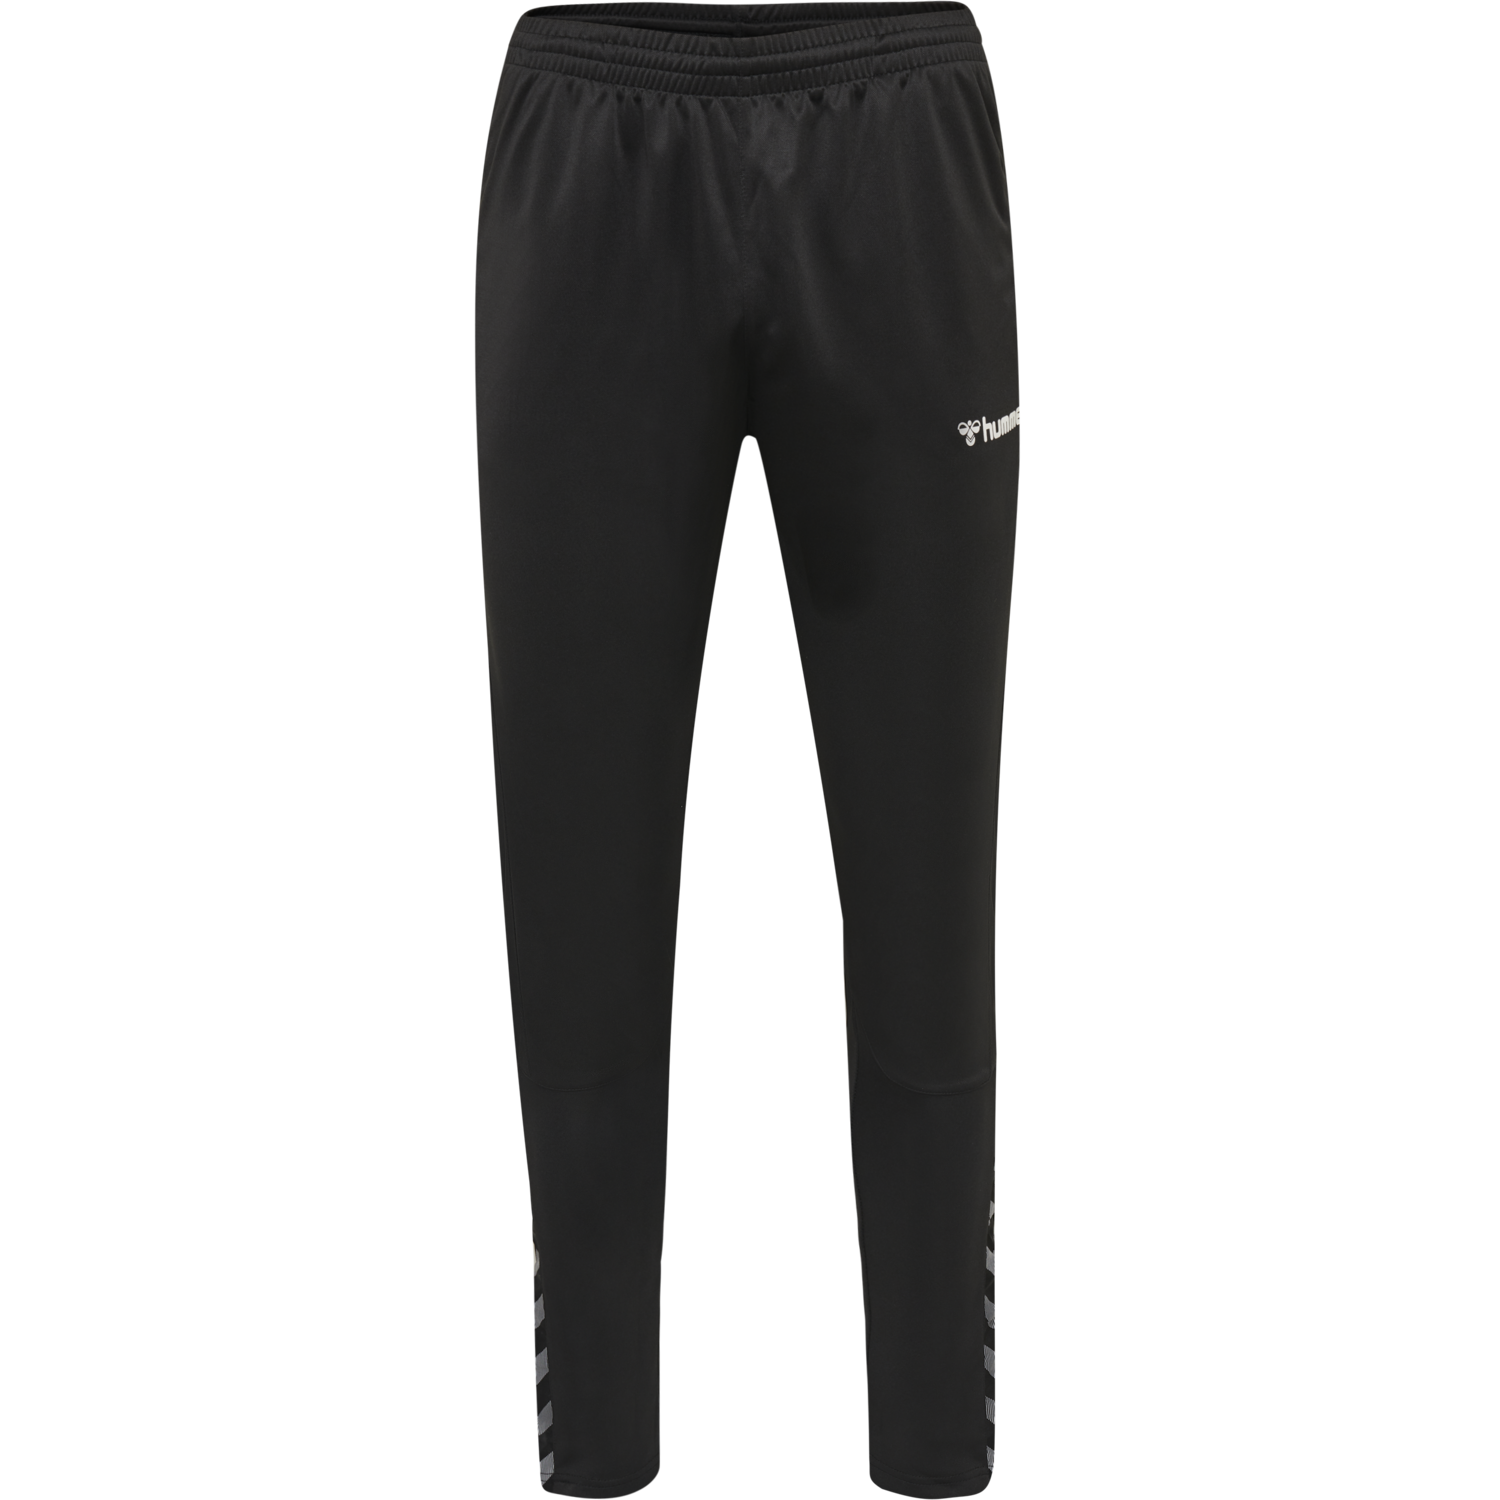 Details about   Hummel Mens Sport Training Casual Pants Trousers Tracksuit Bottoms Sweatpants 